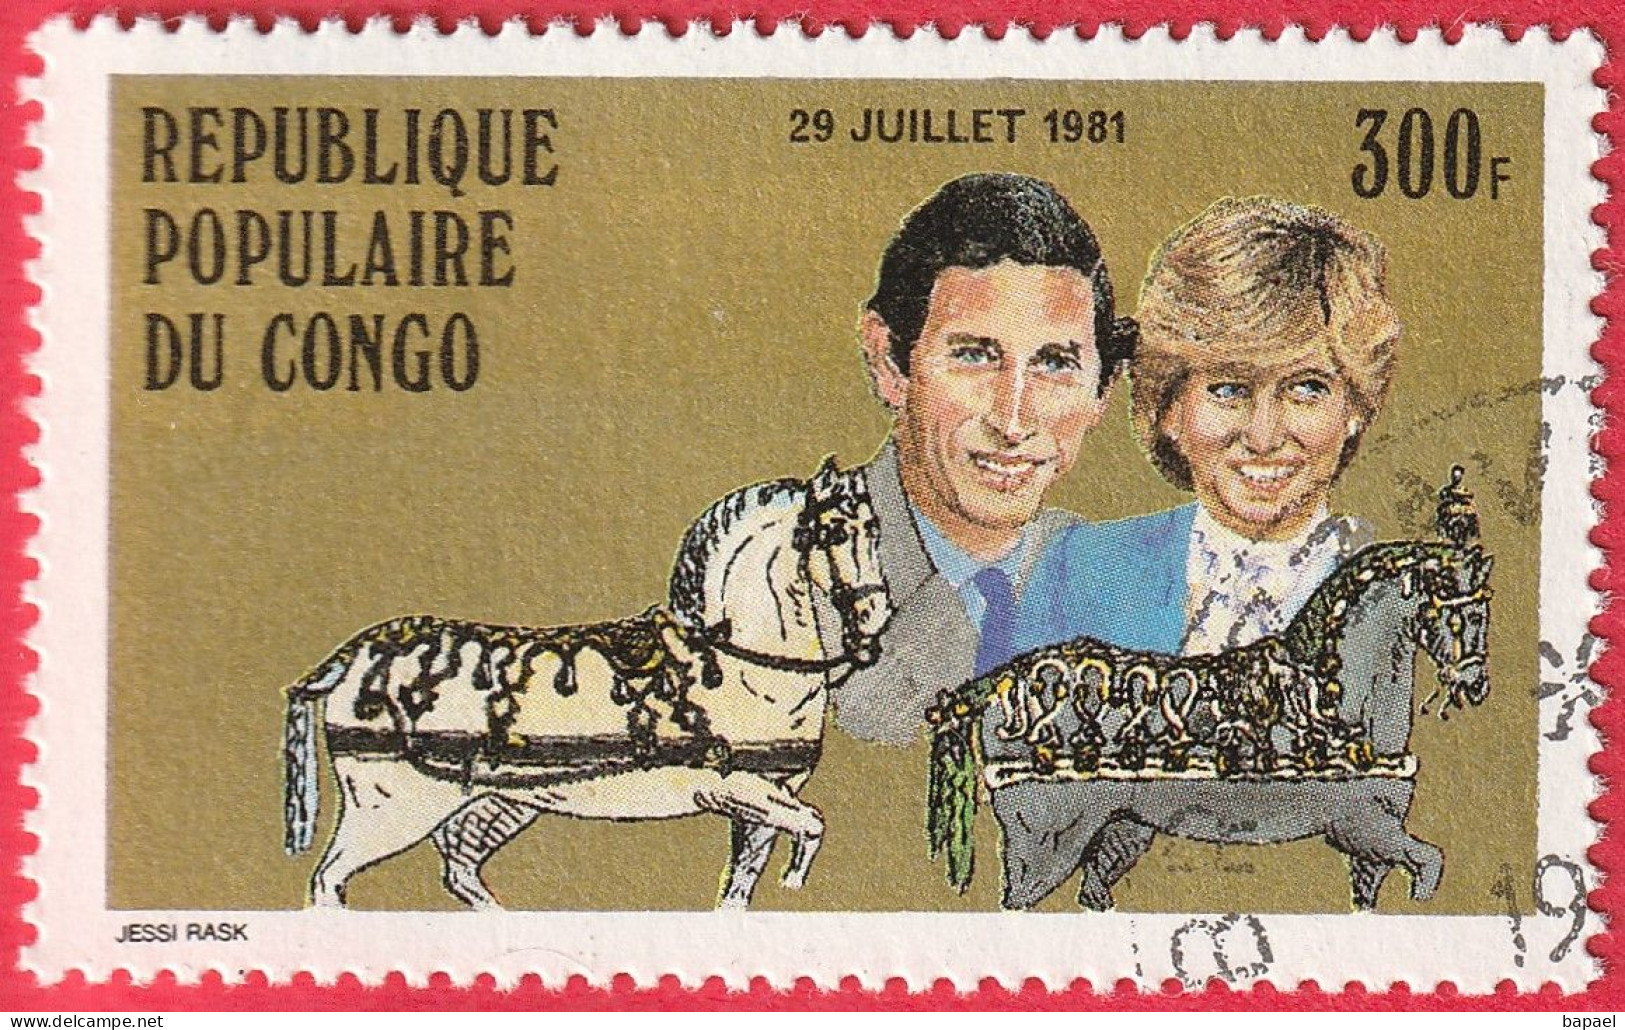 N° Yvert & Tellier 639 - Rép. Du Congo (1981) (Oblitéré) - Mariage Royal Du Prince Charles Et De Lady Diana Spencer - Gebraucht